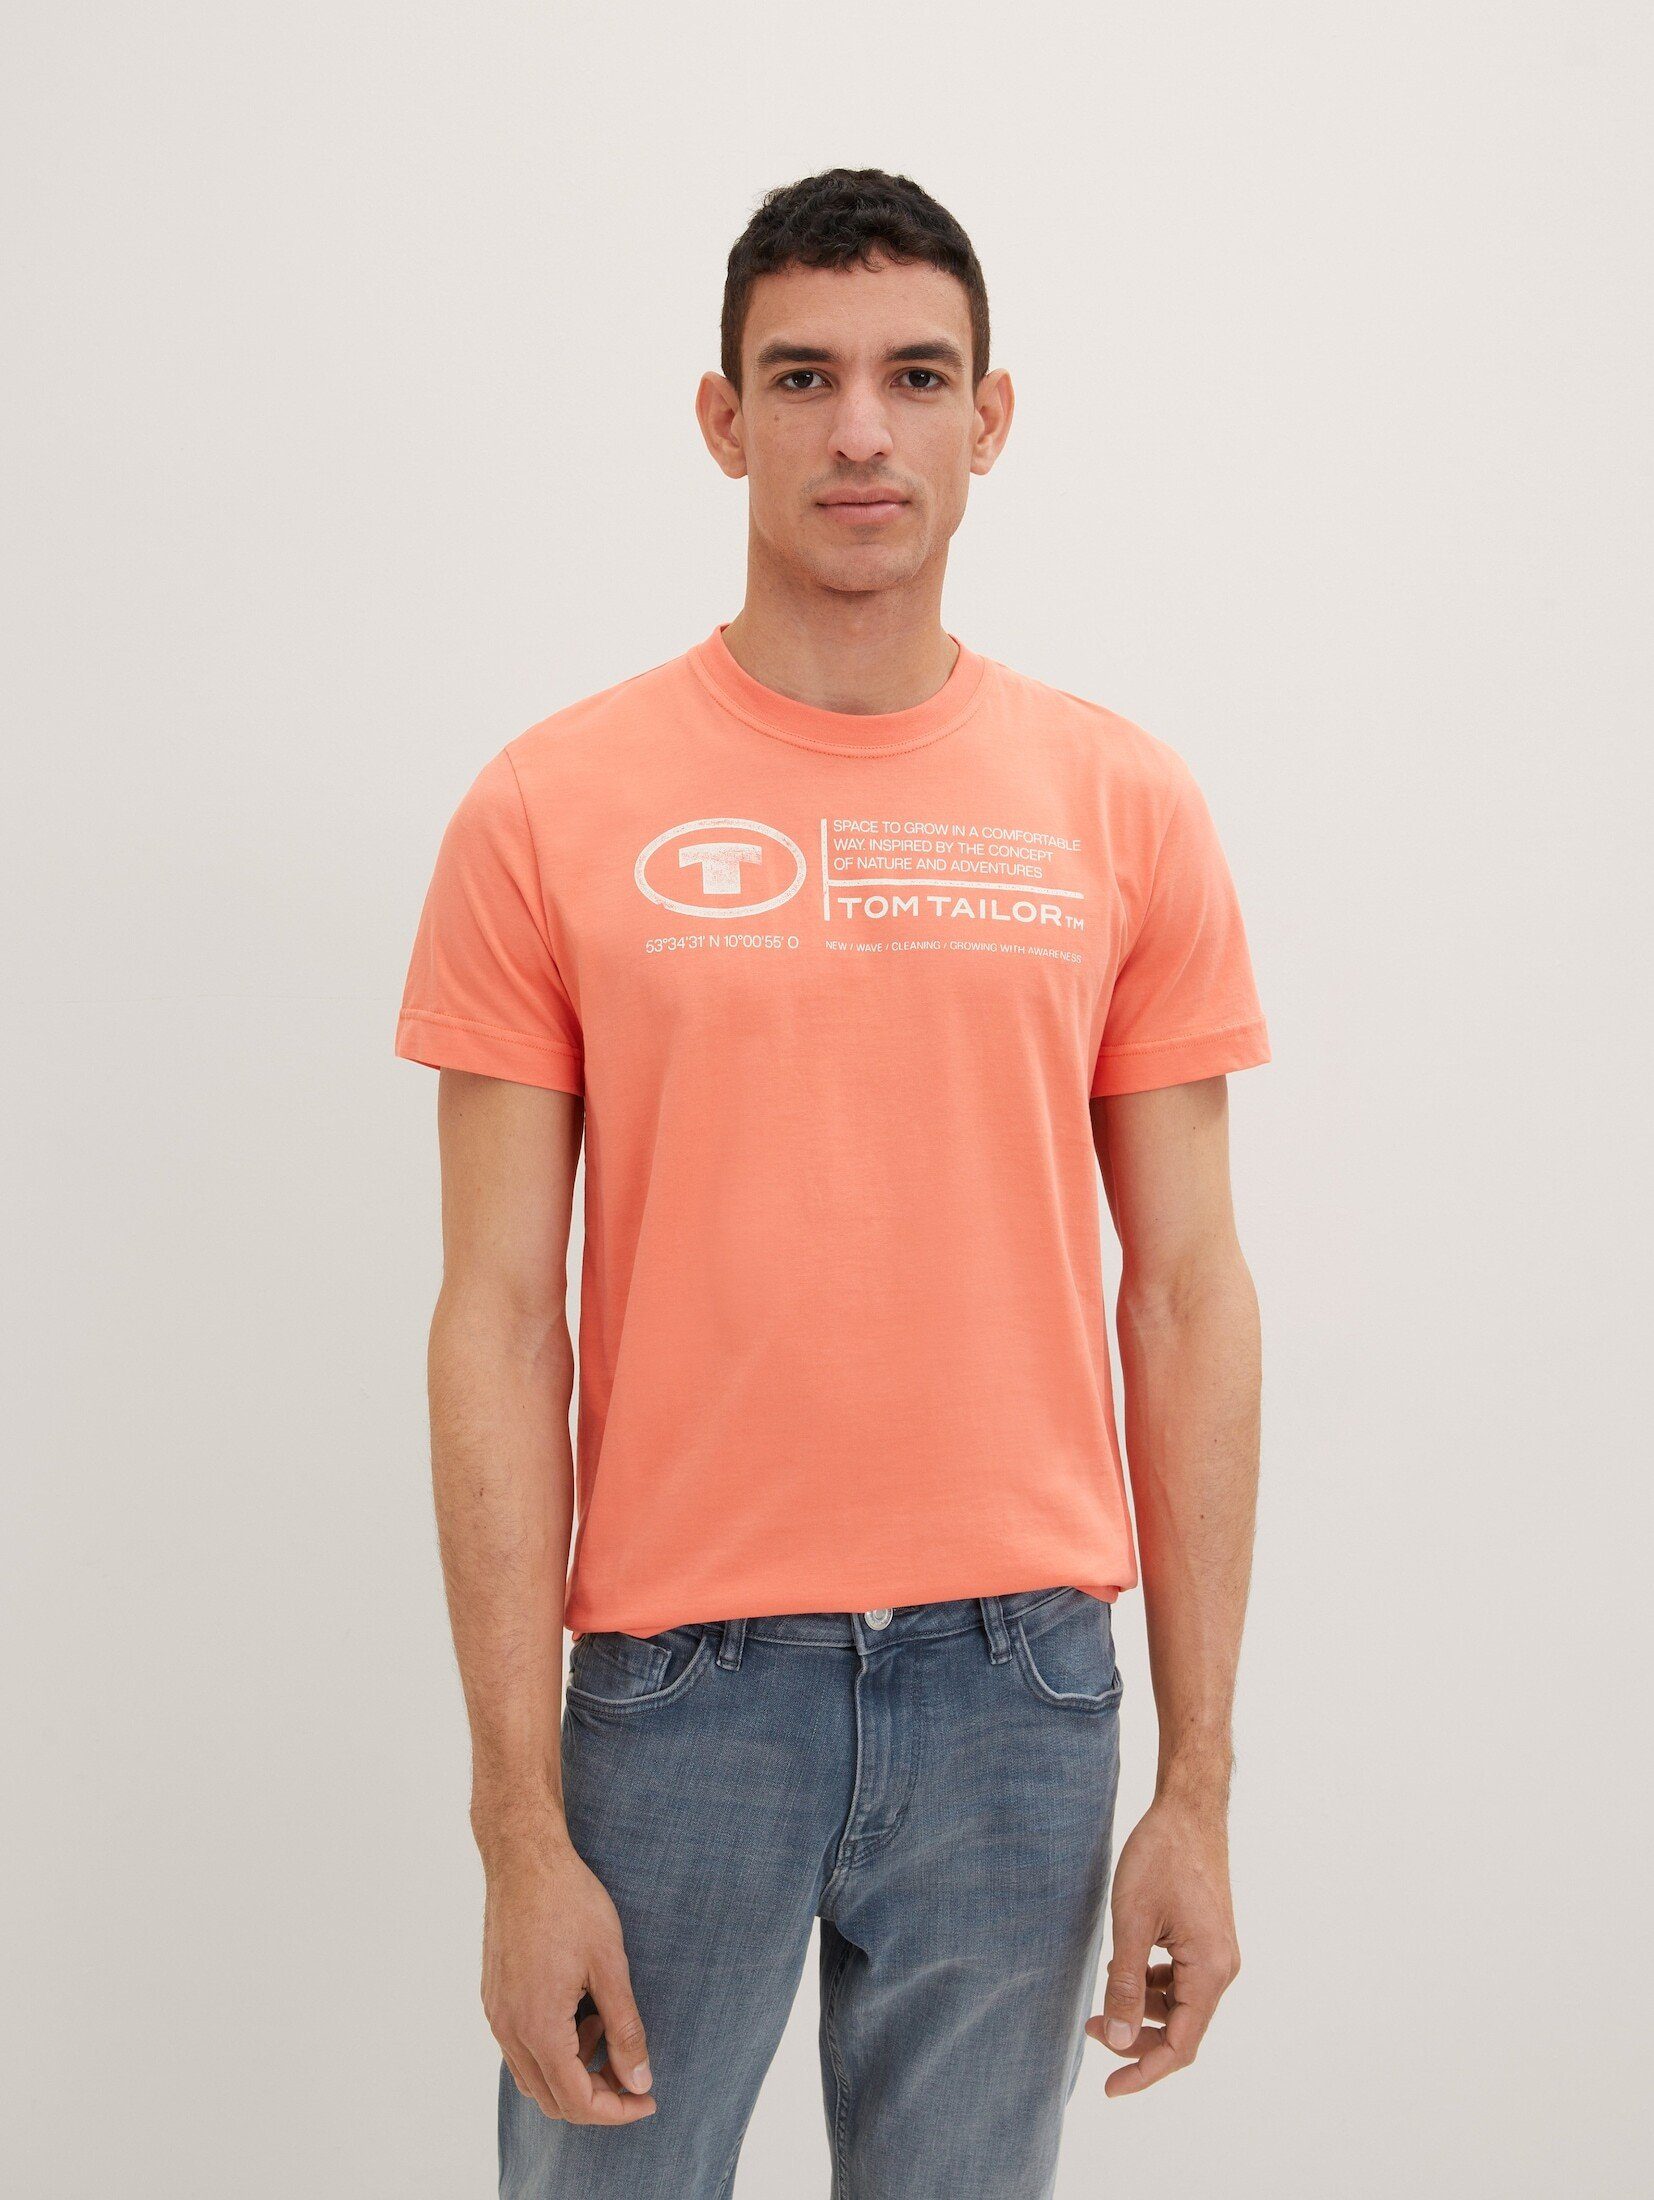 TOM TAILOR T-Shirt T-Shirt mit Logo Print soft peach orange | 